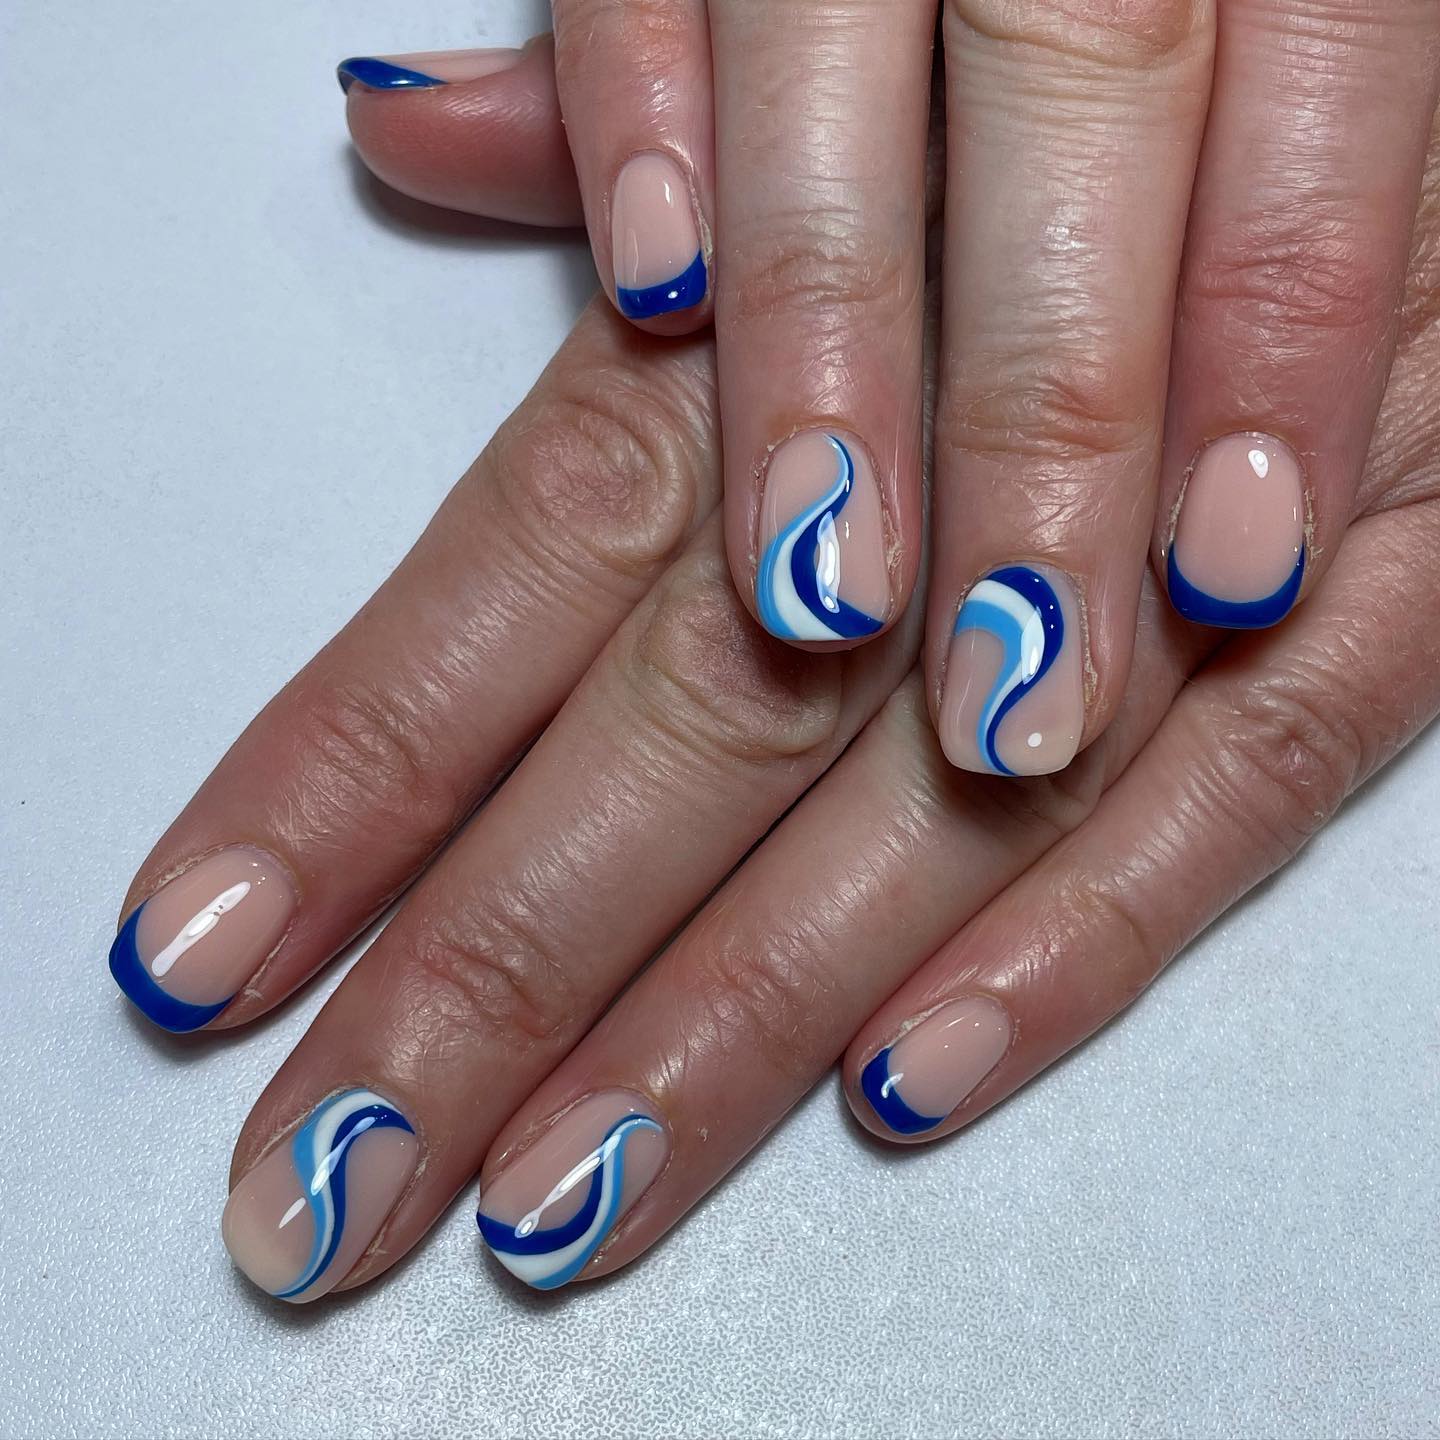 Combinados con puntas francesas de color azul oscuro, los remolinos azules y blancos le recuerdan a alguien las hermosas olas de un océano.  Anímate si te gusta el color azul y los remolinos.